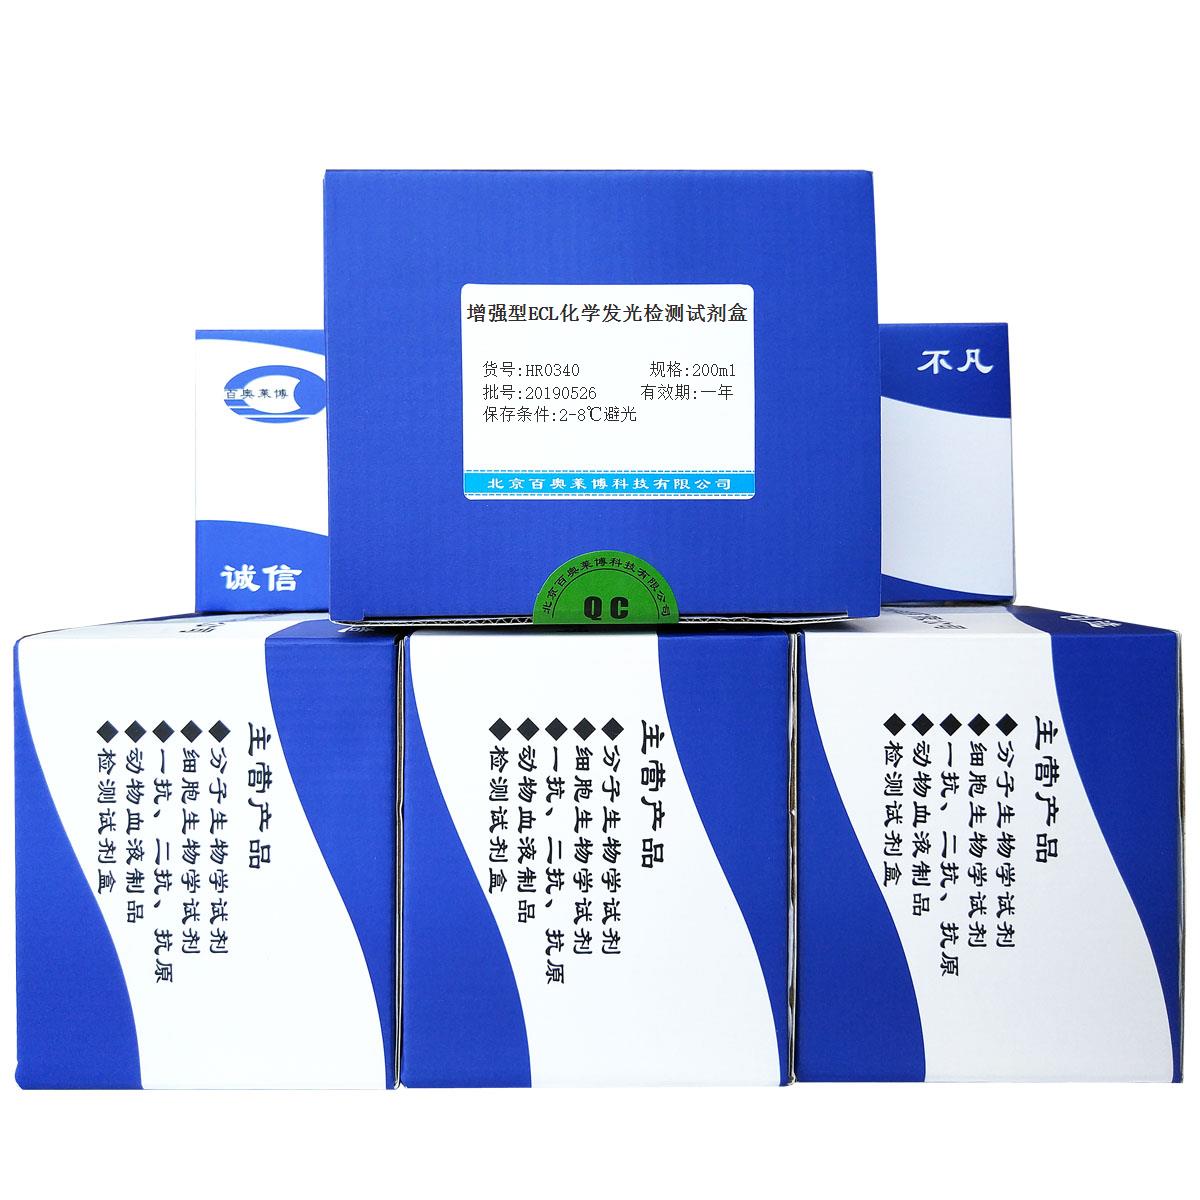 增强型ECL化学发光检测试剂盒优惠促销